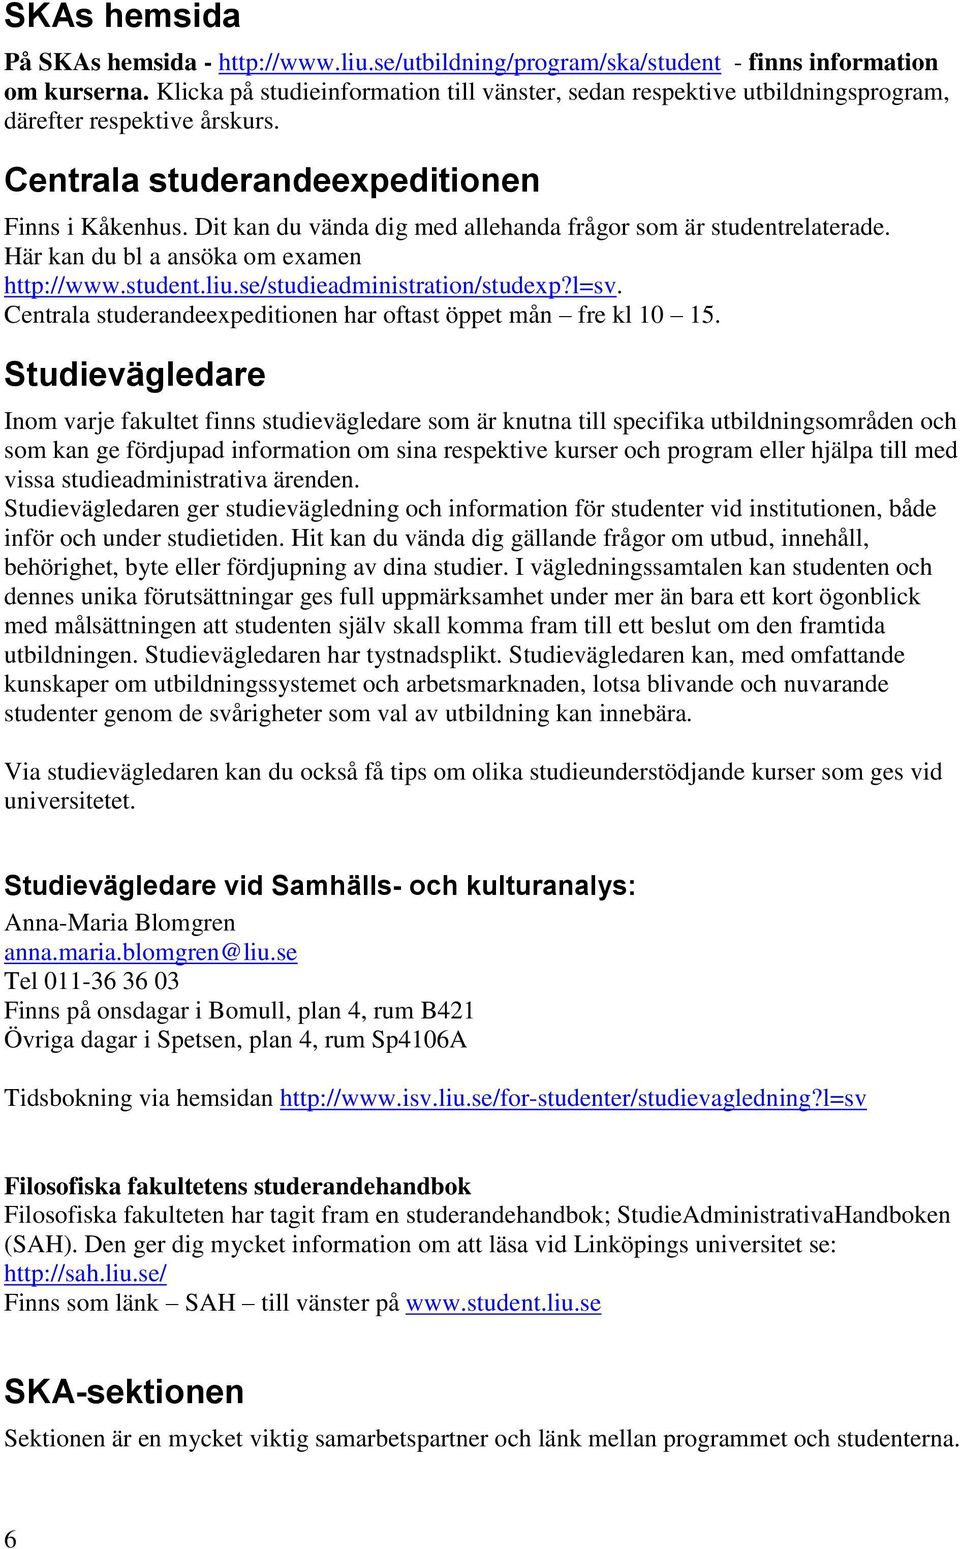 Dit kan du vända dig med allehanda frågor som är studentrelaterade. Här kan du bl a ansöka om examen http://www.student.liu.se/studieadministration/studexp?l=sv.